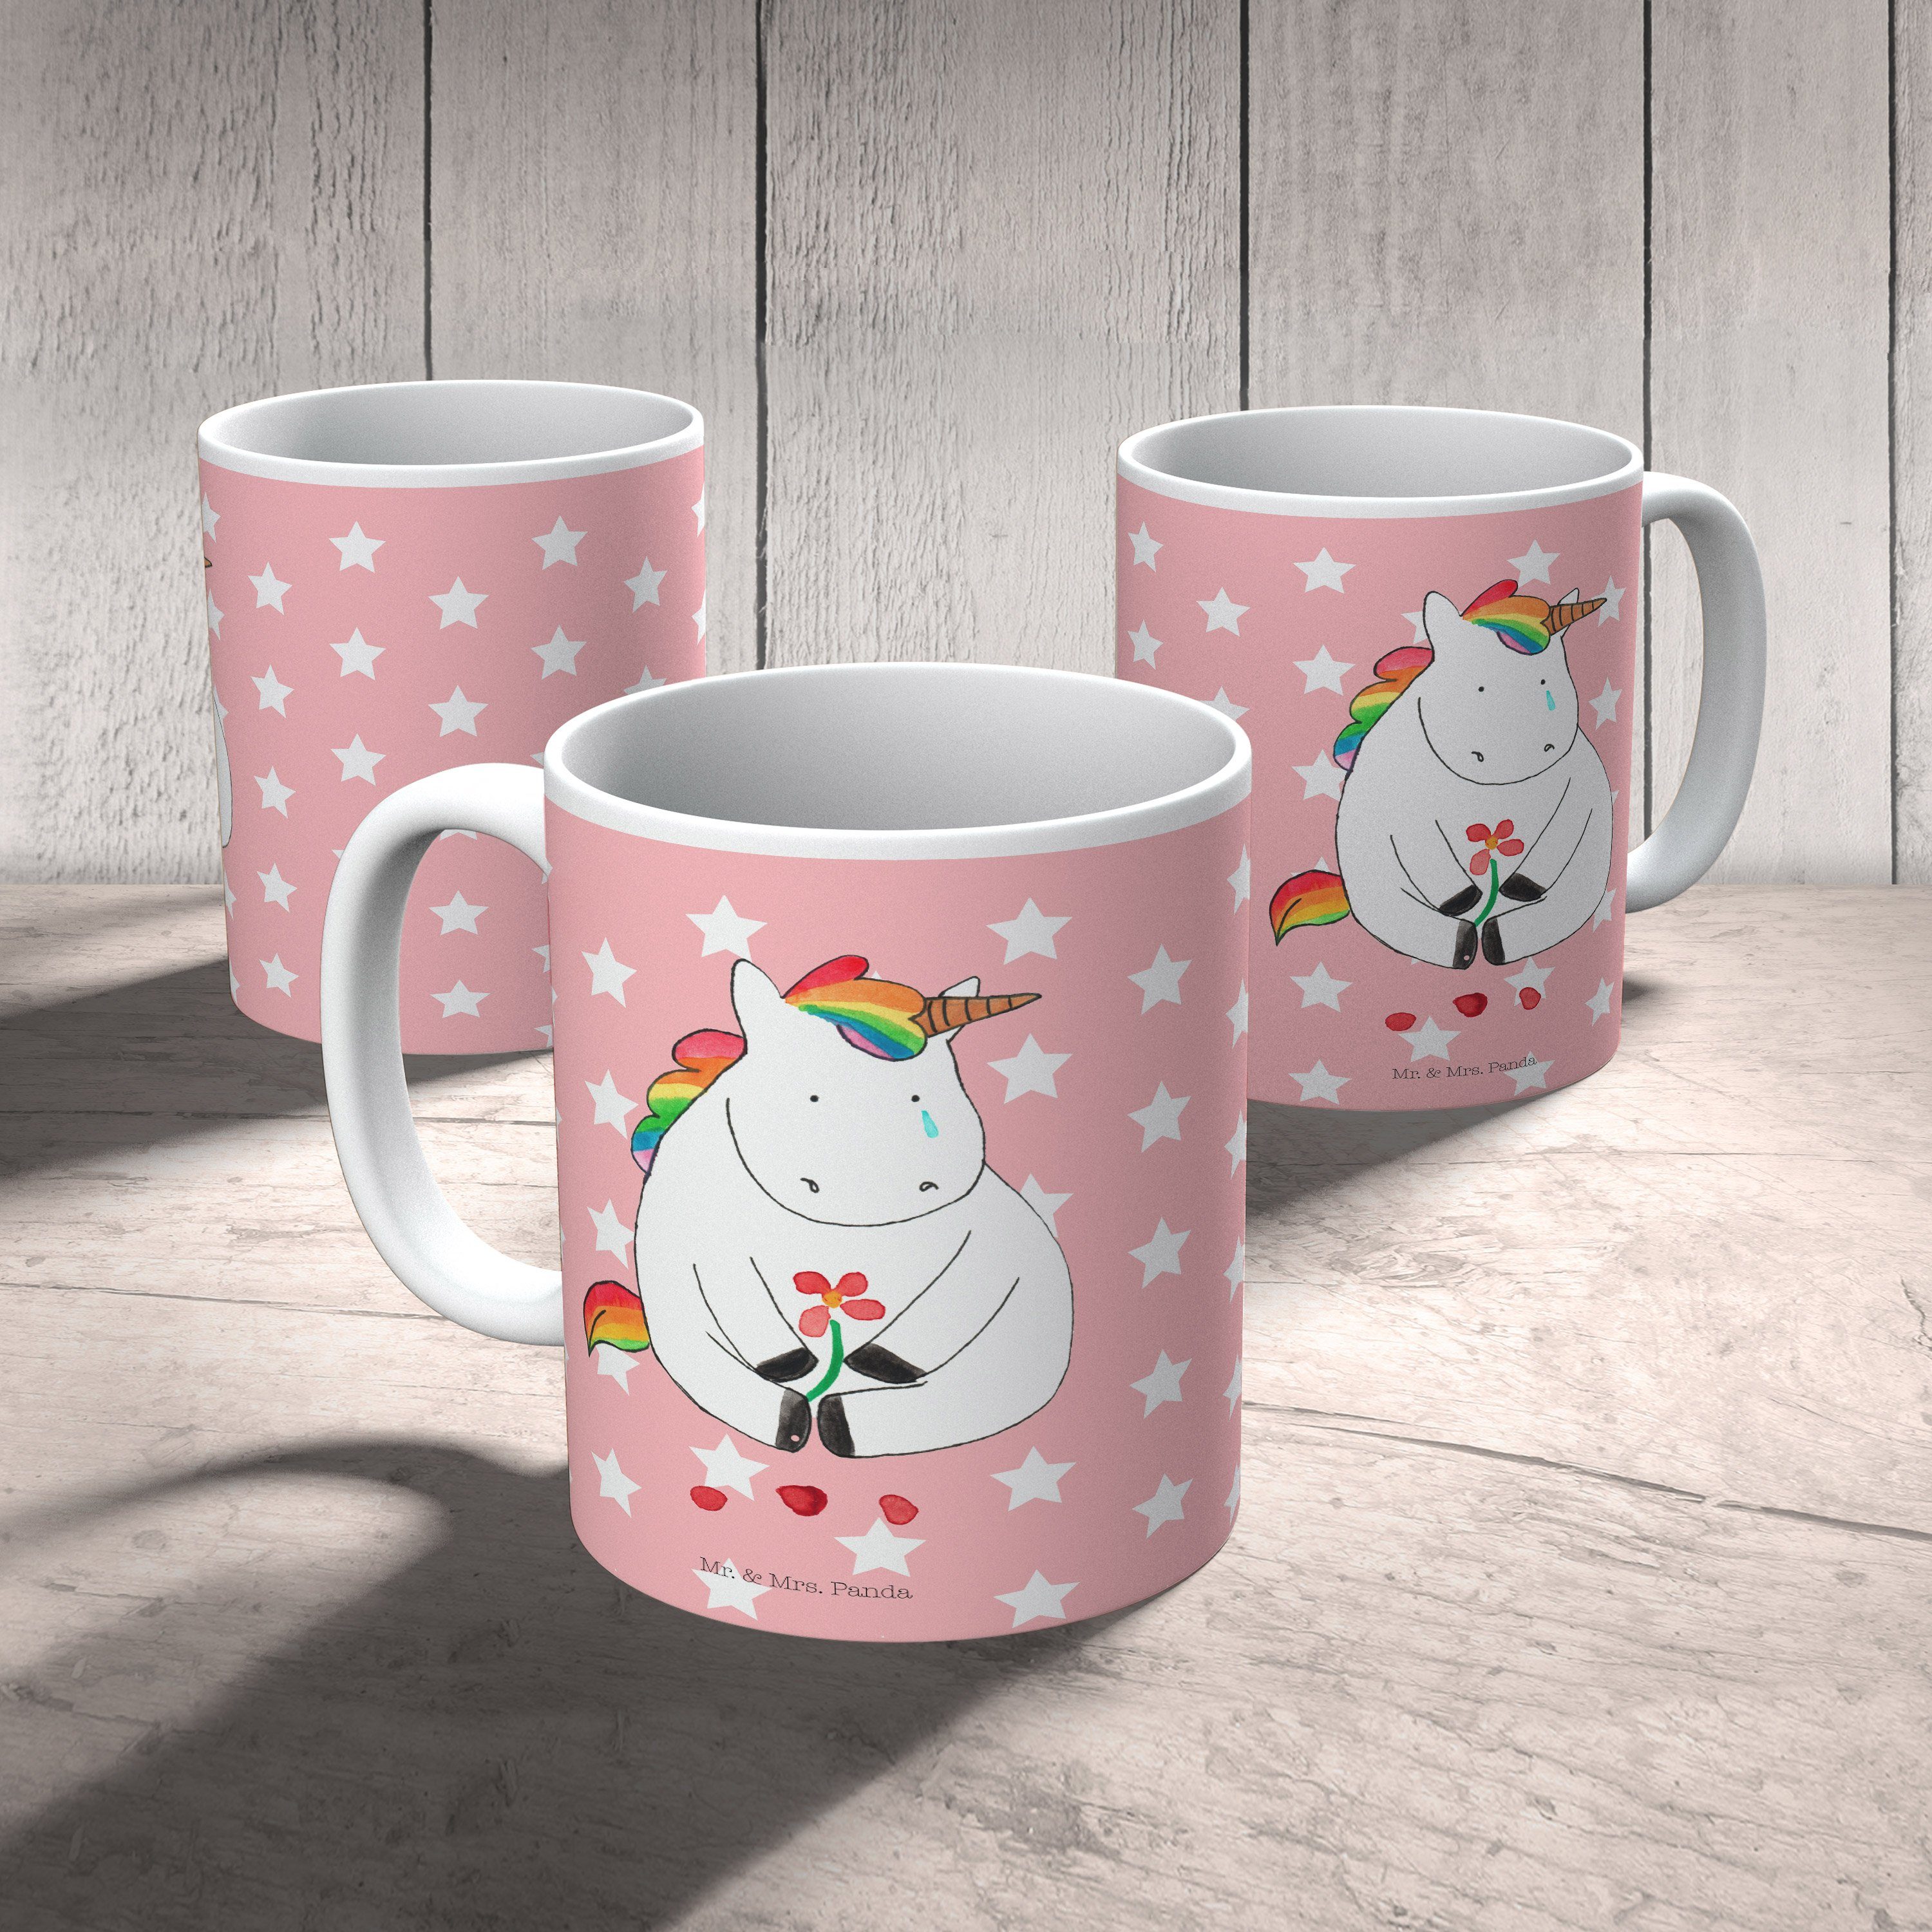 & - Mrs. Kinderbecher Pastell Kaffeetasse, Traurig Tasse, Rot Einhorn, Geschenk, Mr. Einhorn Panda - Kunststoff